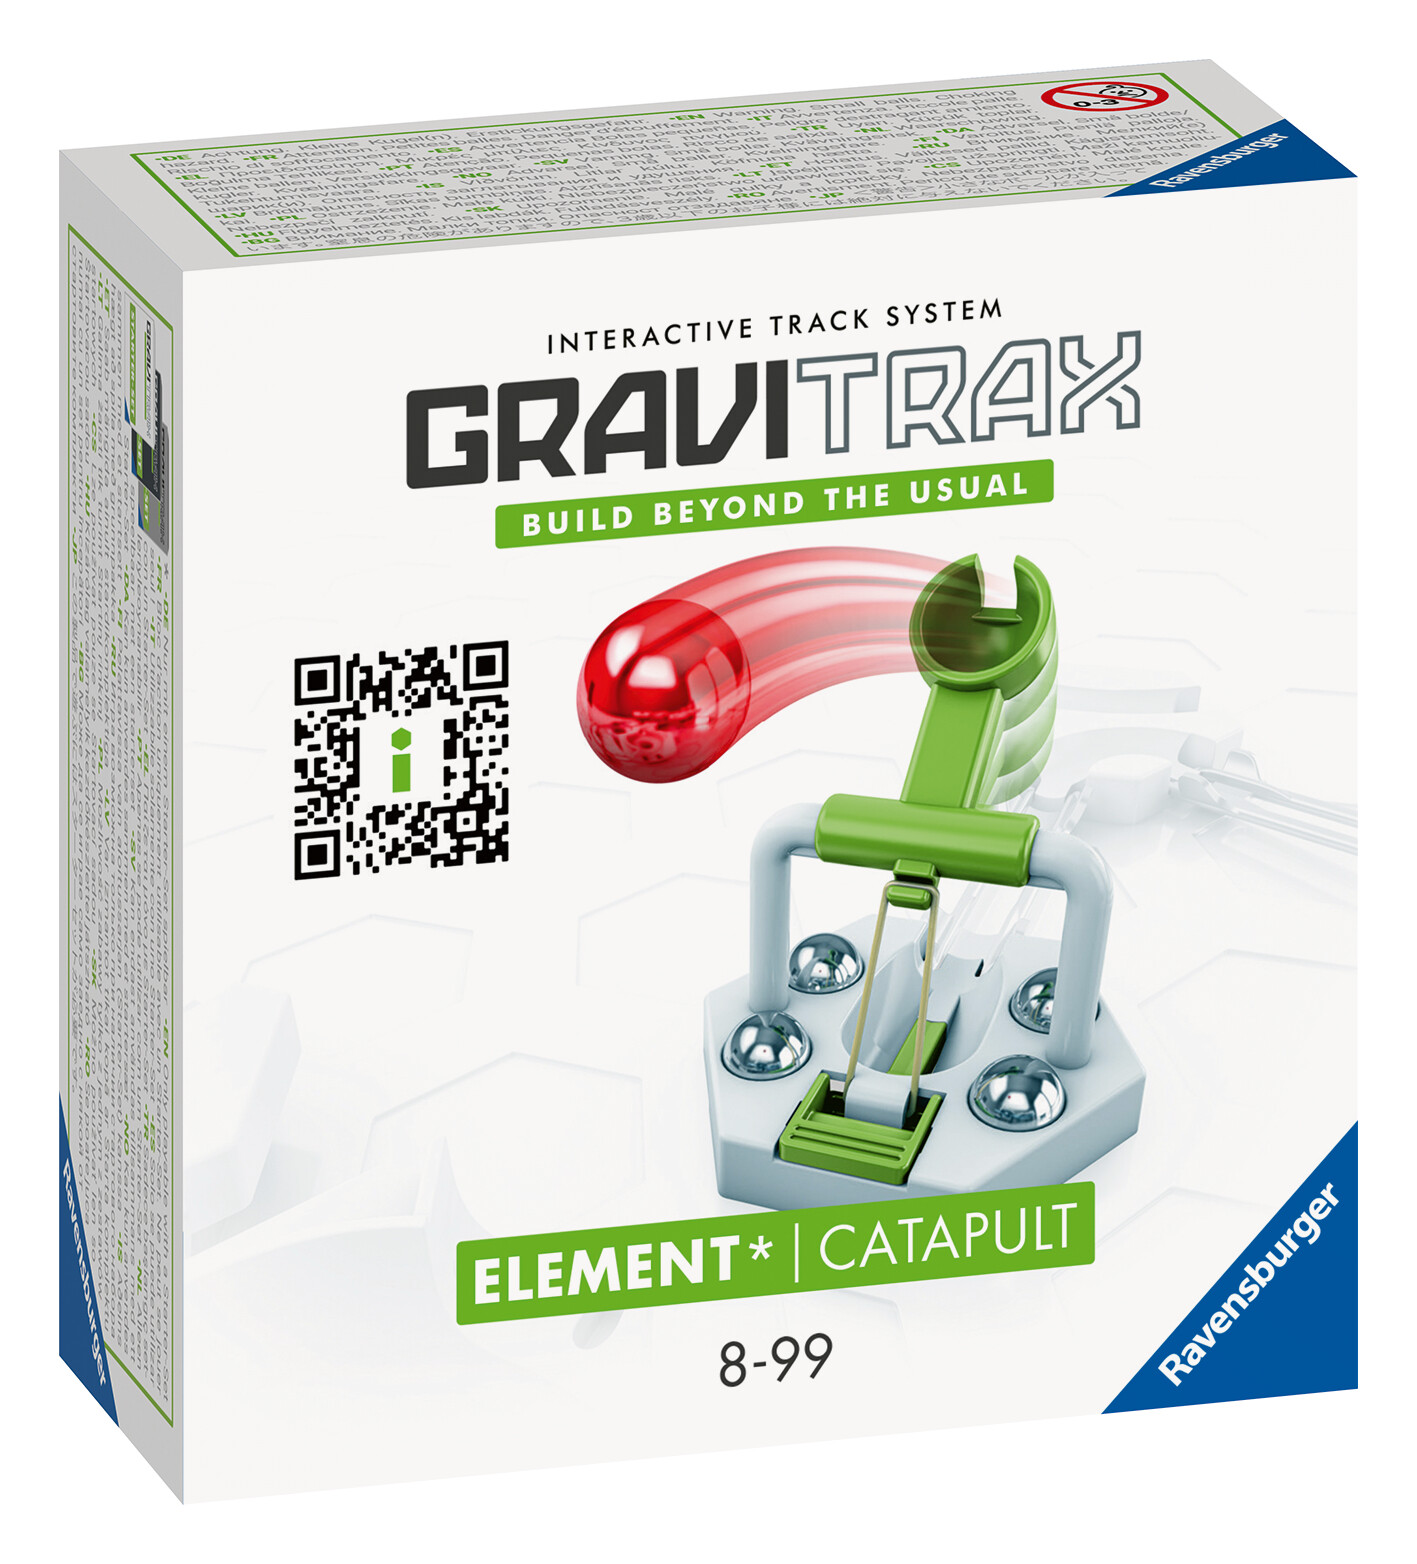 Ravensburger gravitrax catapult - catapulta, gioco innovativo ed educativo stem, 8+ anni, accessorio - GRAVITRAX